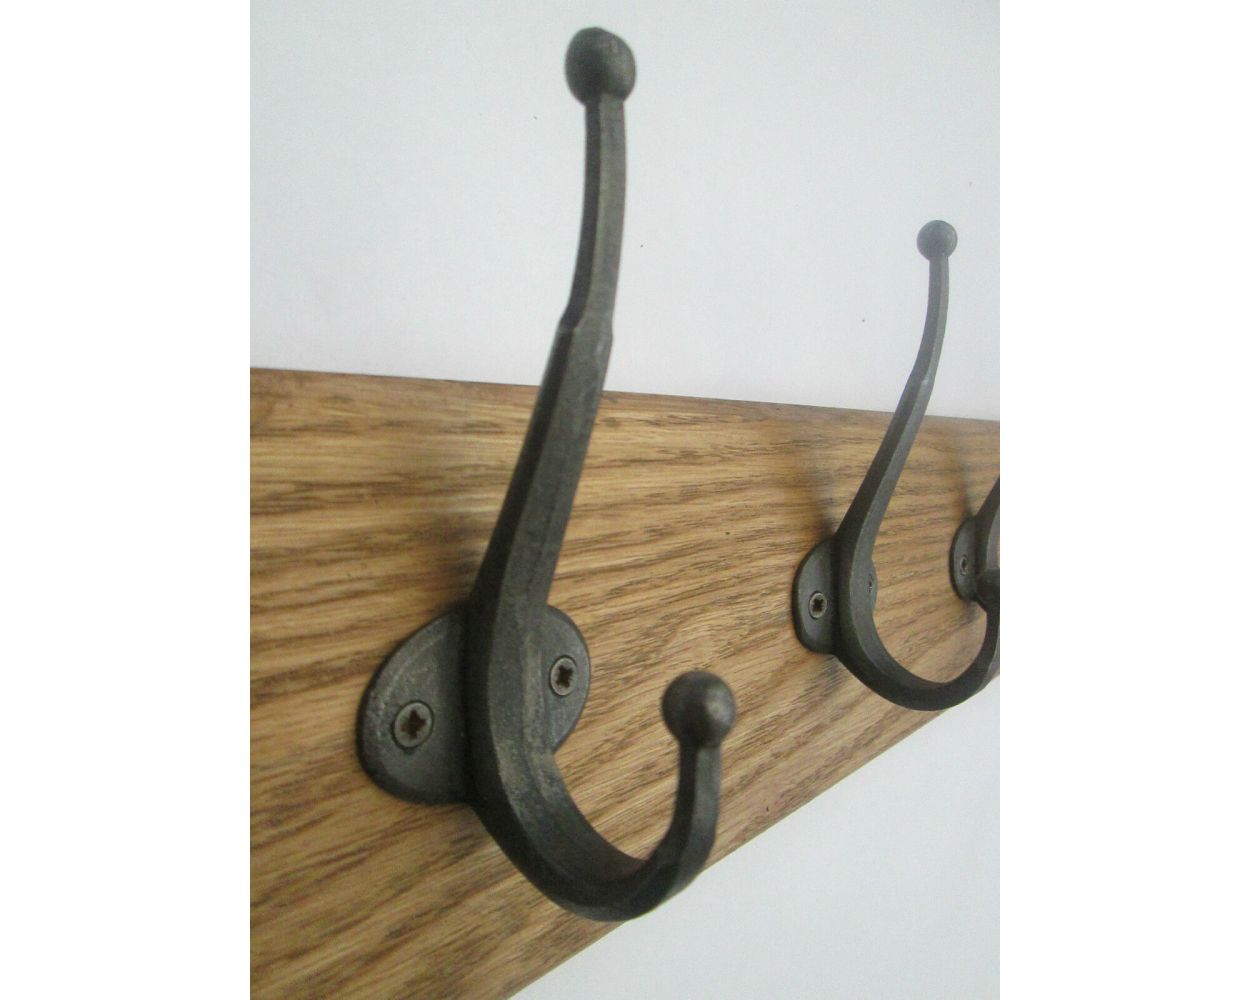 Antique Iron Handforged Style Ikea Coat Hook Rail byIronmongery World